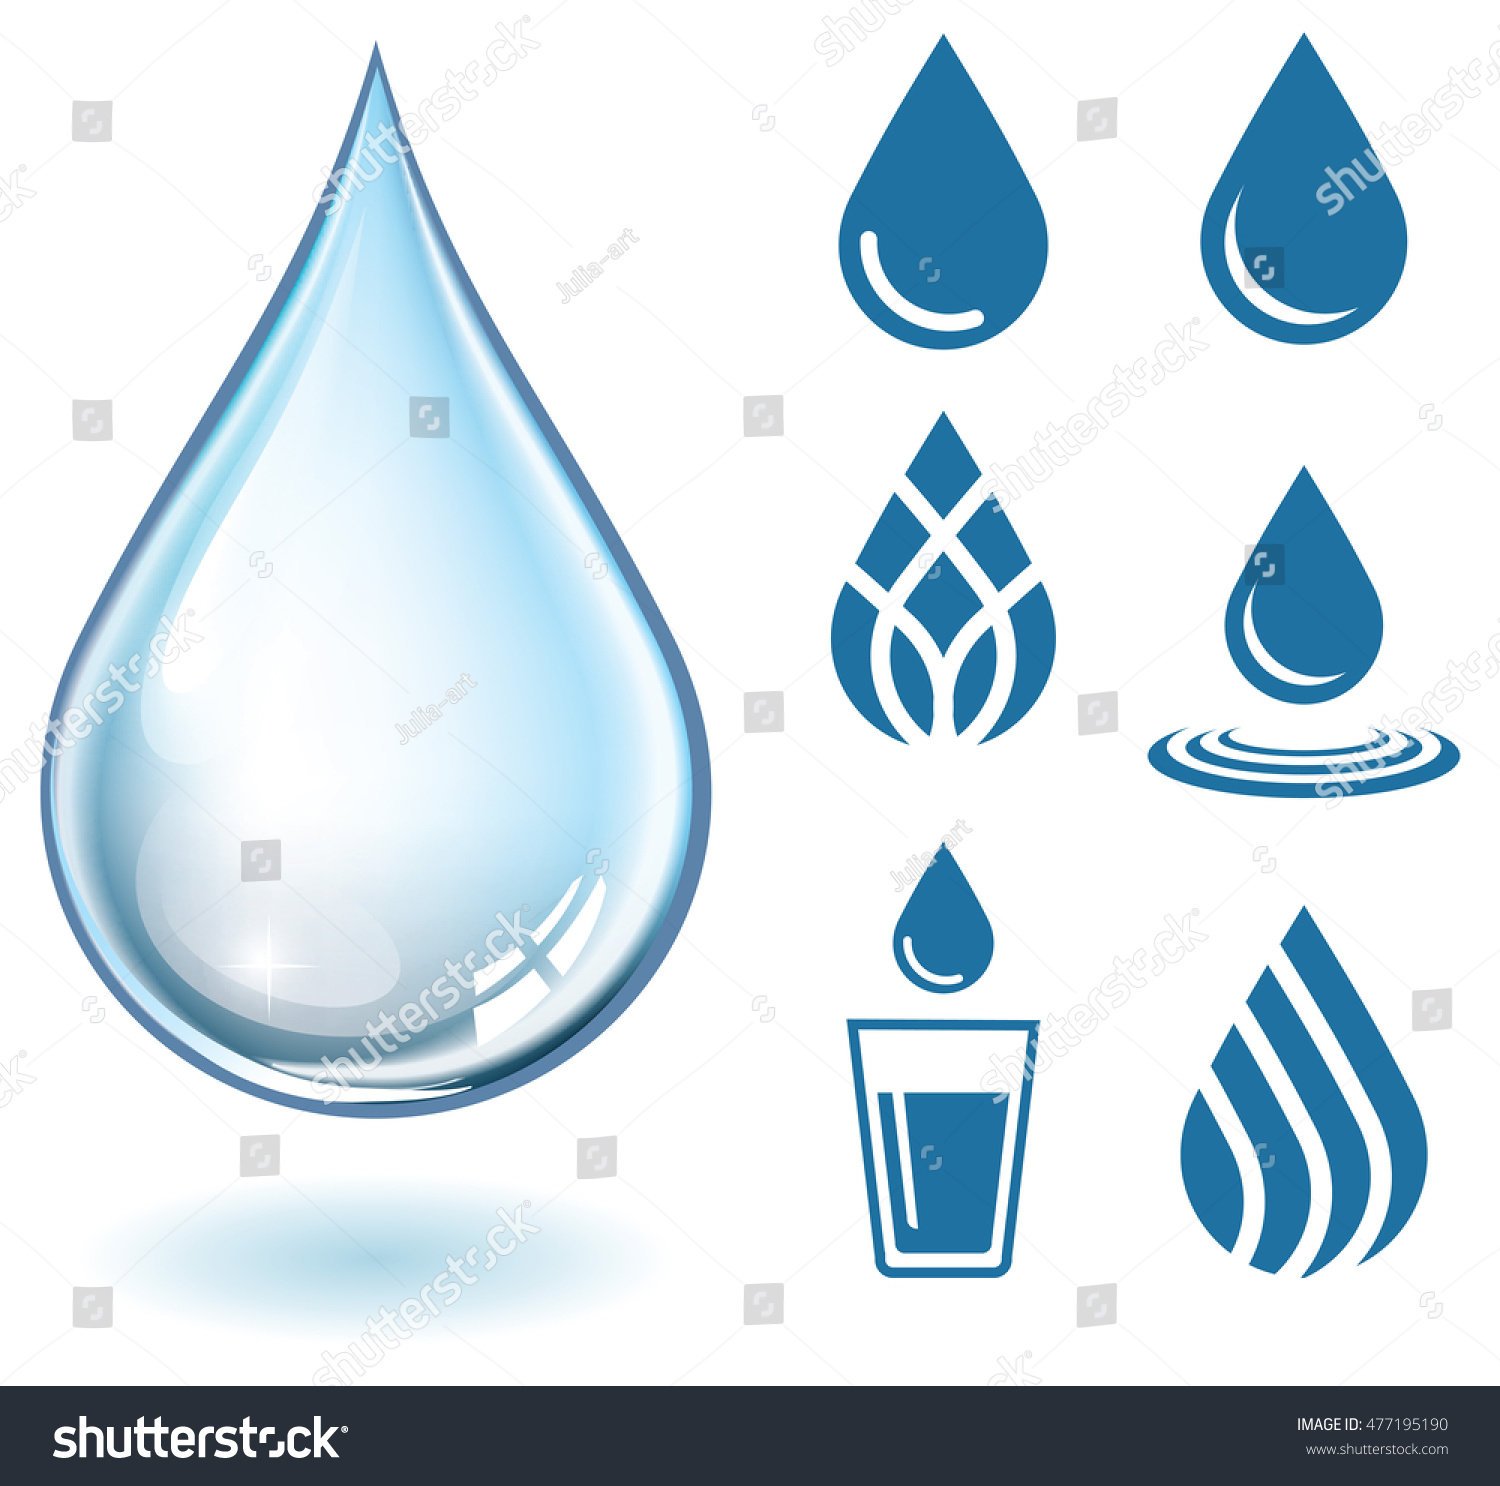 Vector Realistic Water Drop Set Icons Stock Vector 477195190 - Shutterstock